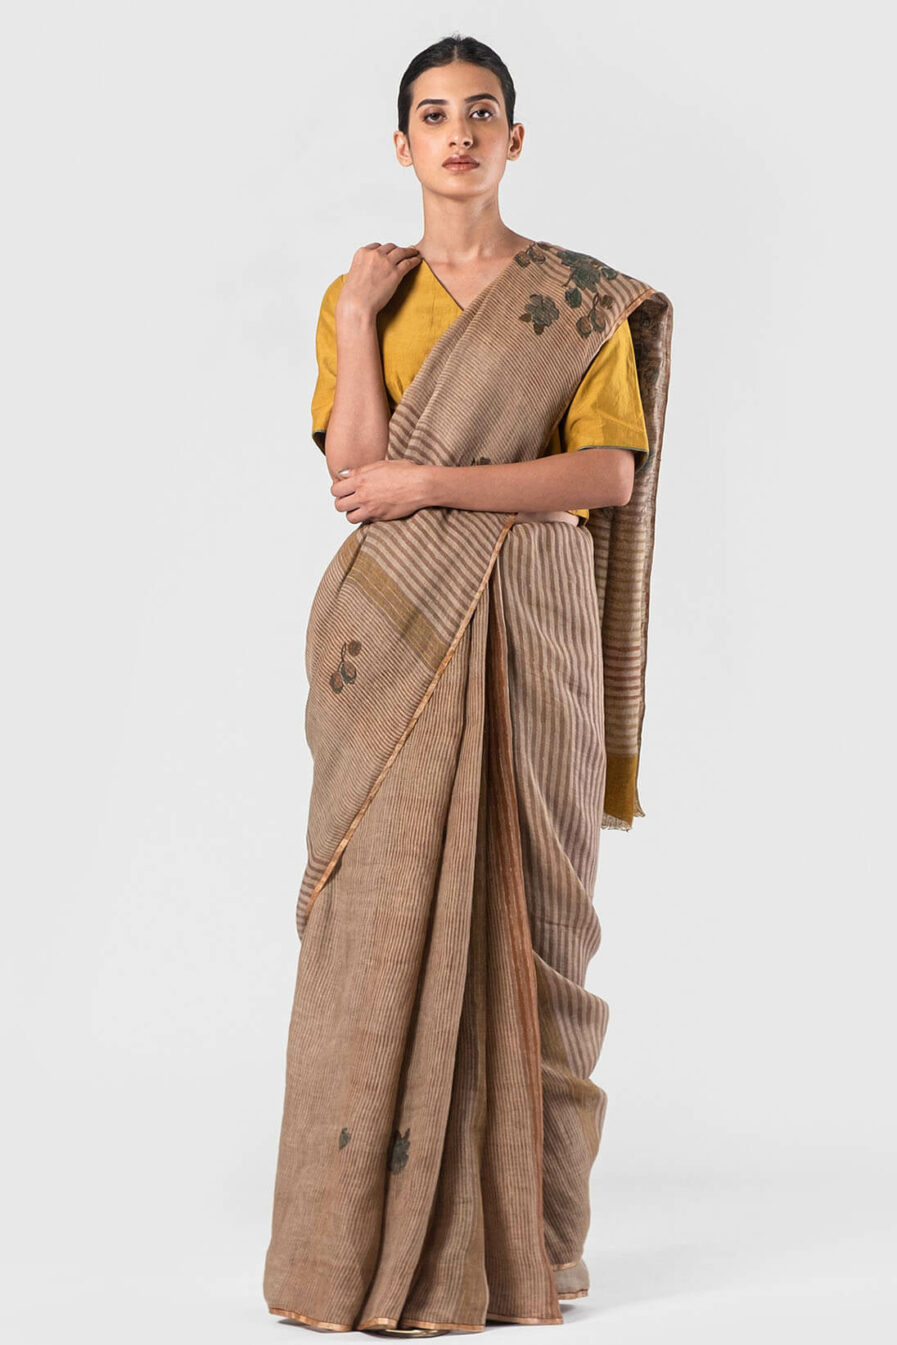 Anavila Fawn Multi stripes floral block printed sari